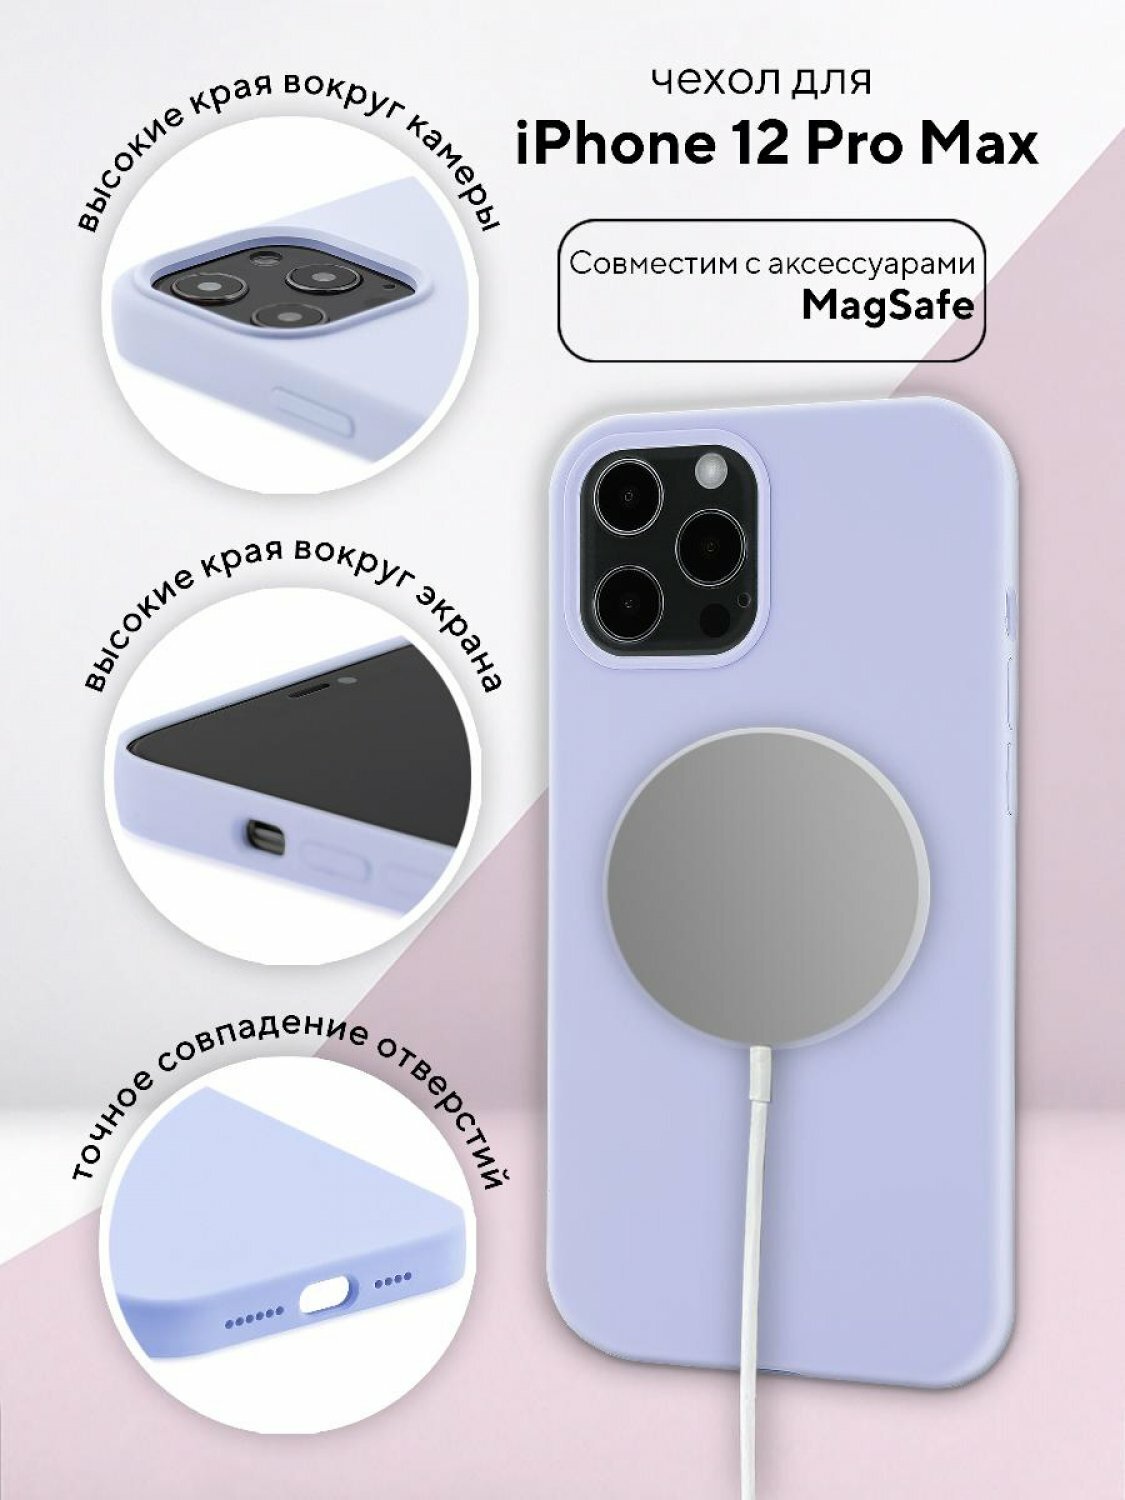 Чехол для Apple iPhone 12 Pro Max КRUЧЕ Silicone MagSafe Lilac purple, противоударный кейс, силиконовый бампер магсейф, софттач накладка с защитой камеры